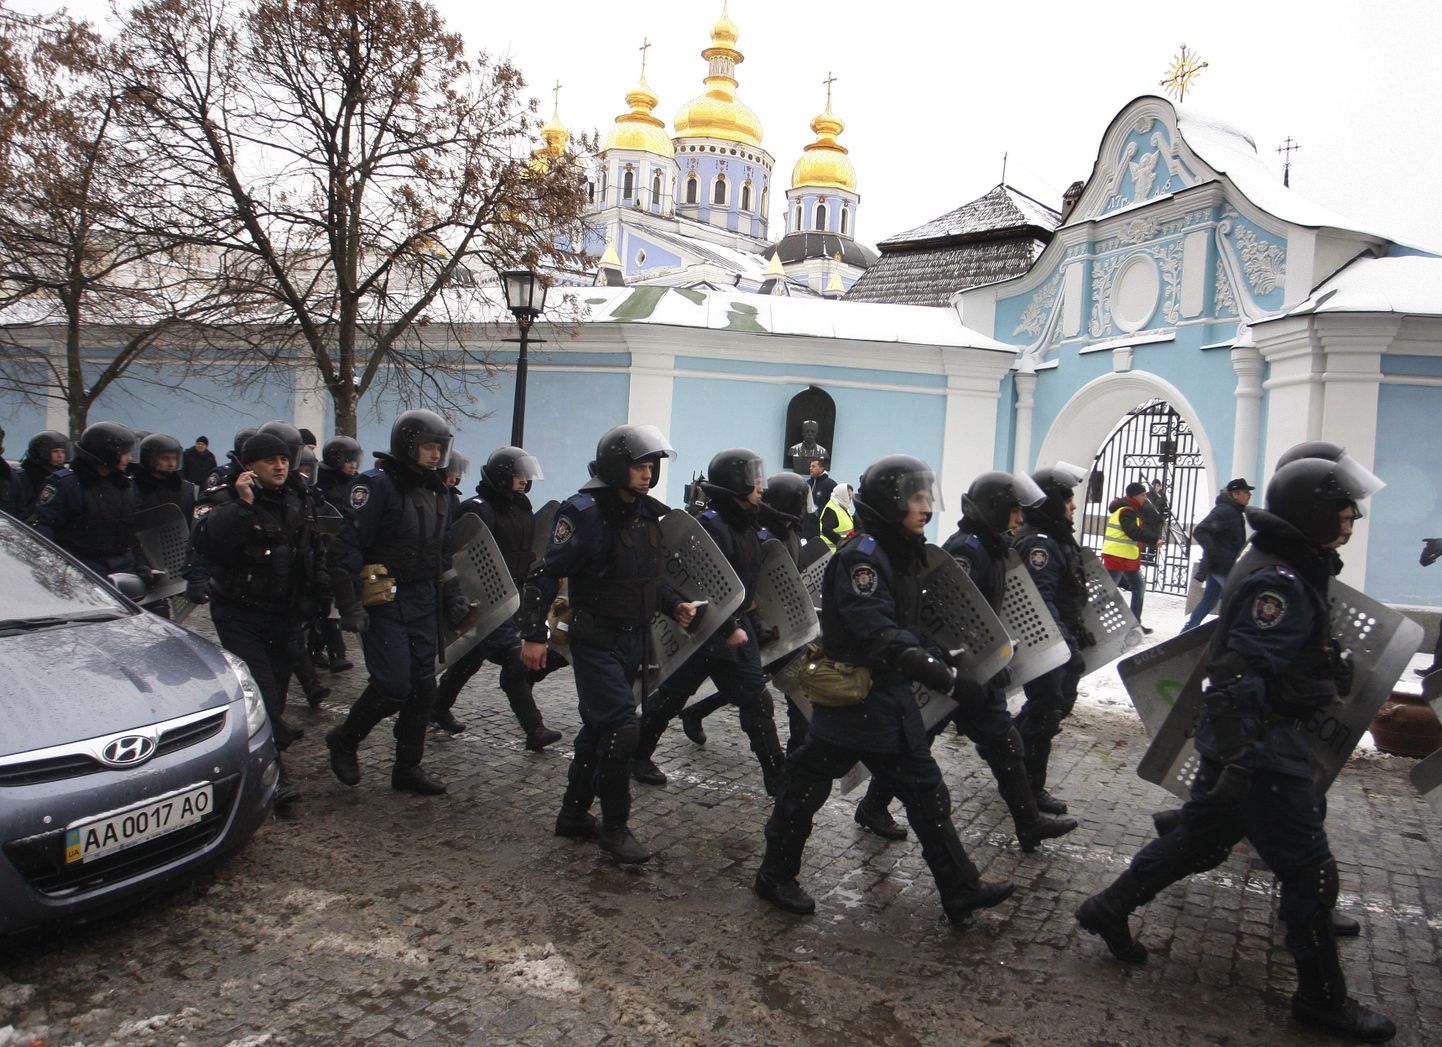 Kiievi tänavatele jõudis täna sadu siseministeeriumi eriüksuslasi.